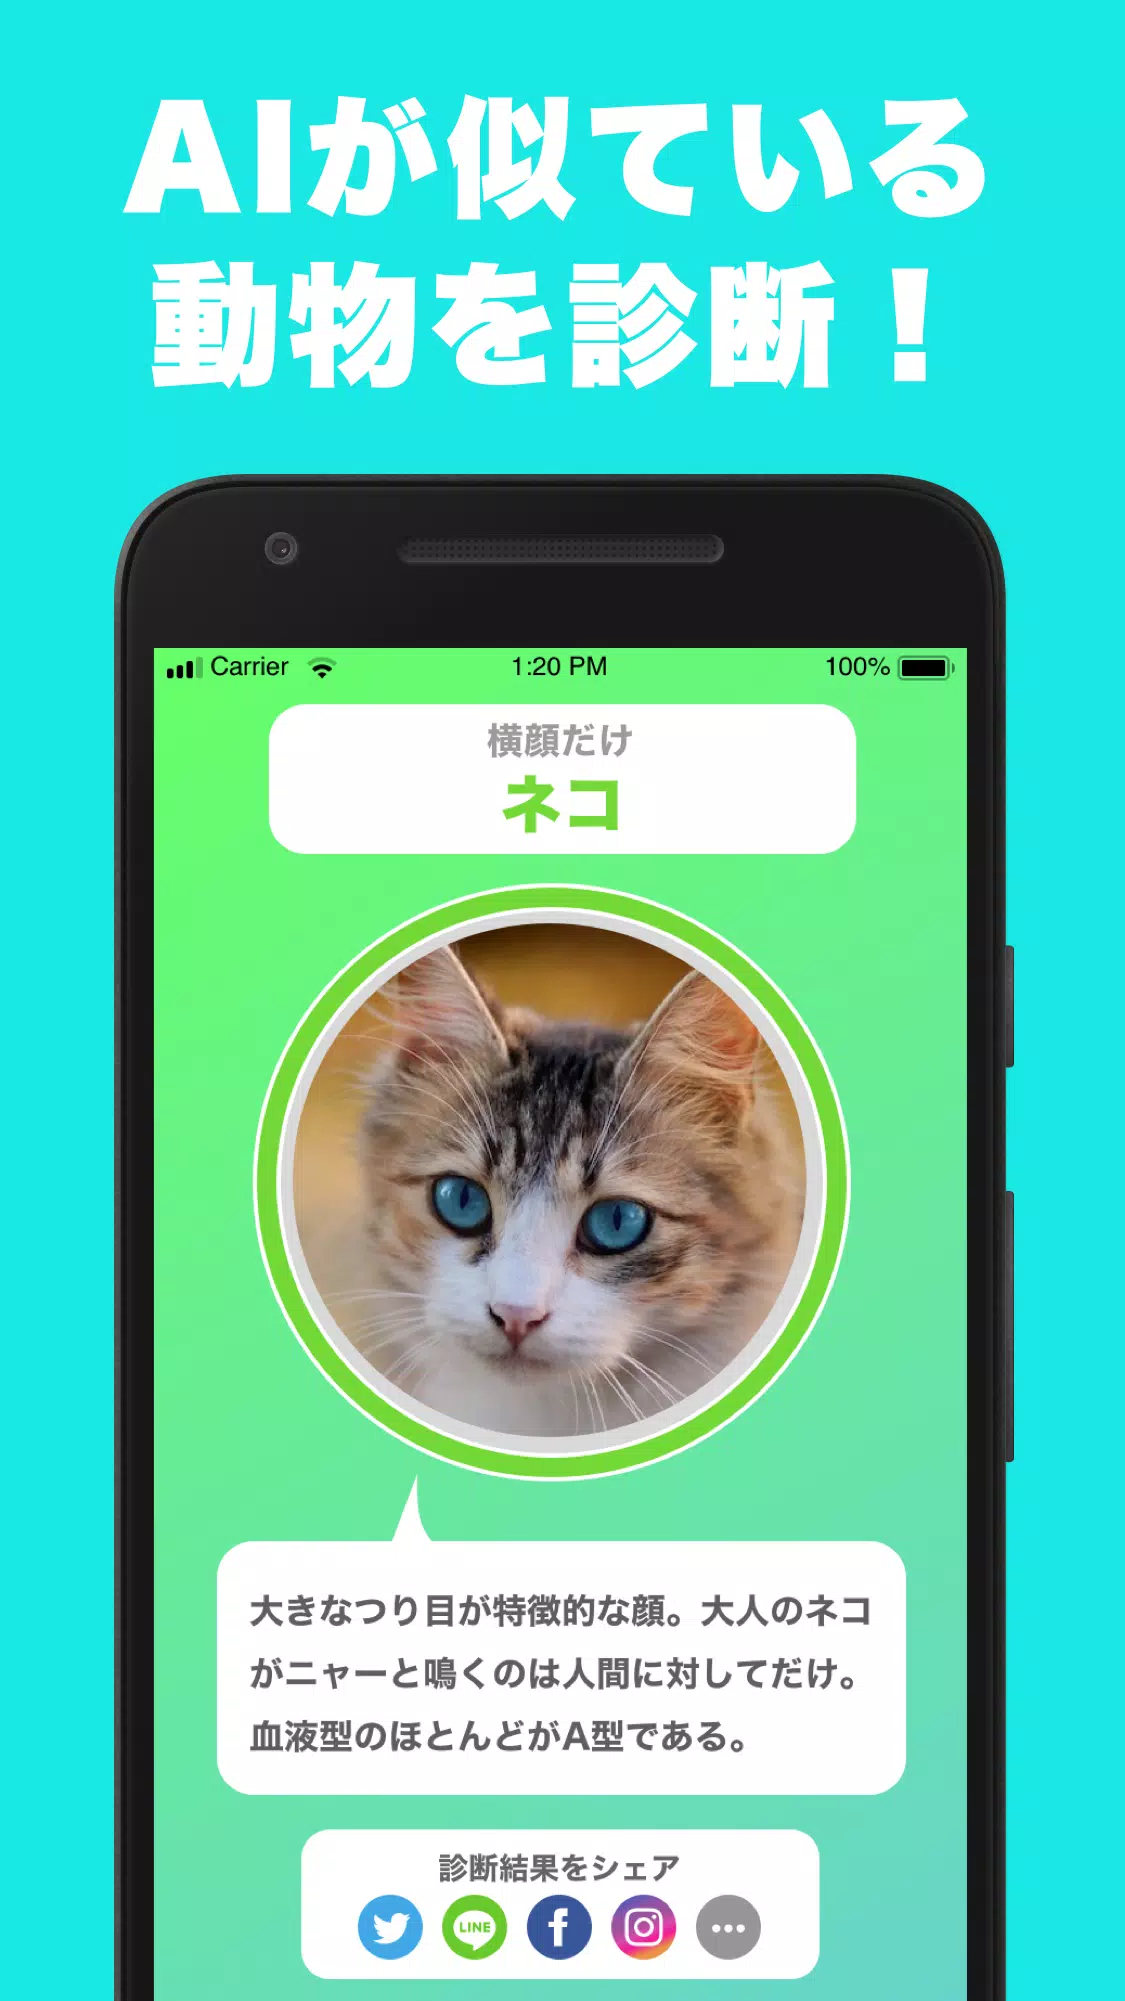 似てる顔の動物を診断するアプリ どうぶつカメラ そっくりな動物をai診断 Apk Untuk Unduhan Android